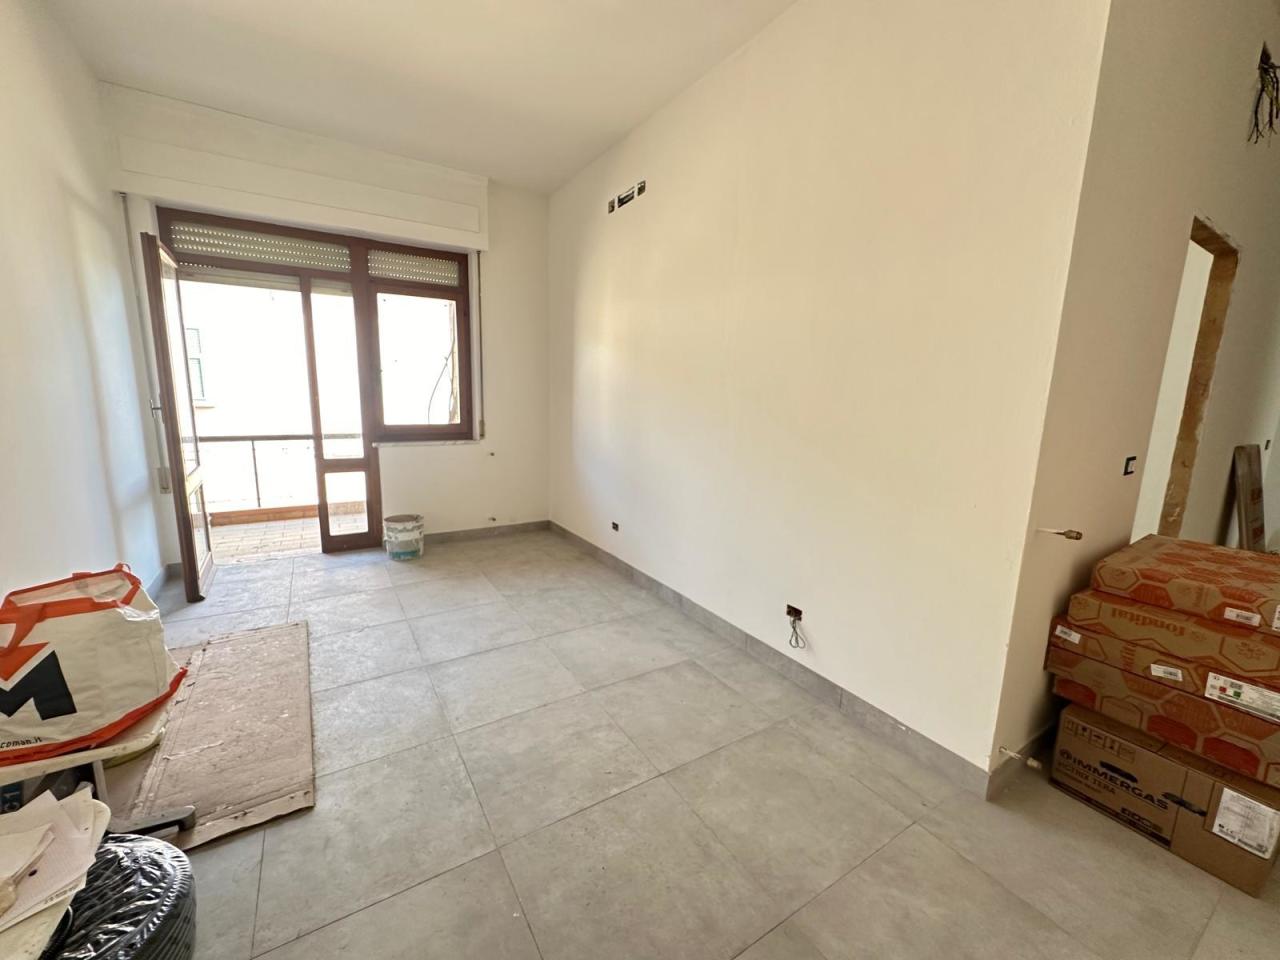 Appartamento in vendita a Ortonovo, 4 locali, prezzo € 120.000 | PortaleAgenzieImmobiliari.it